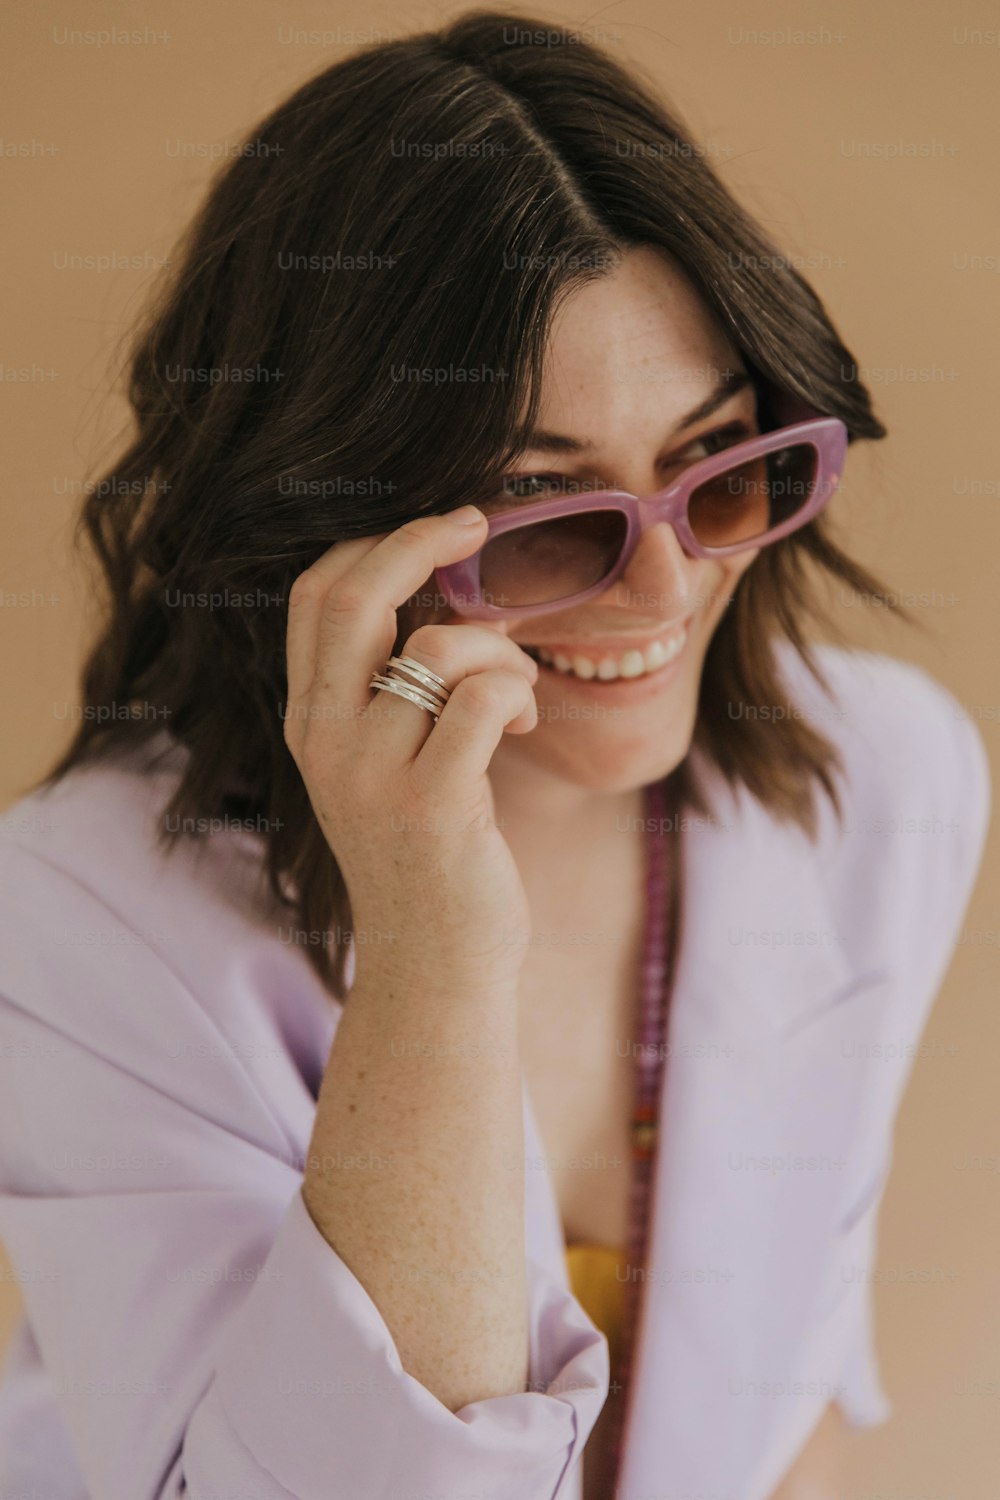 Una mujer con una camisa púrpura sosteniendo un par de gafas de sol